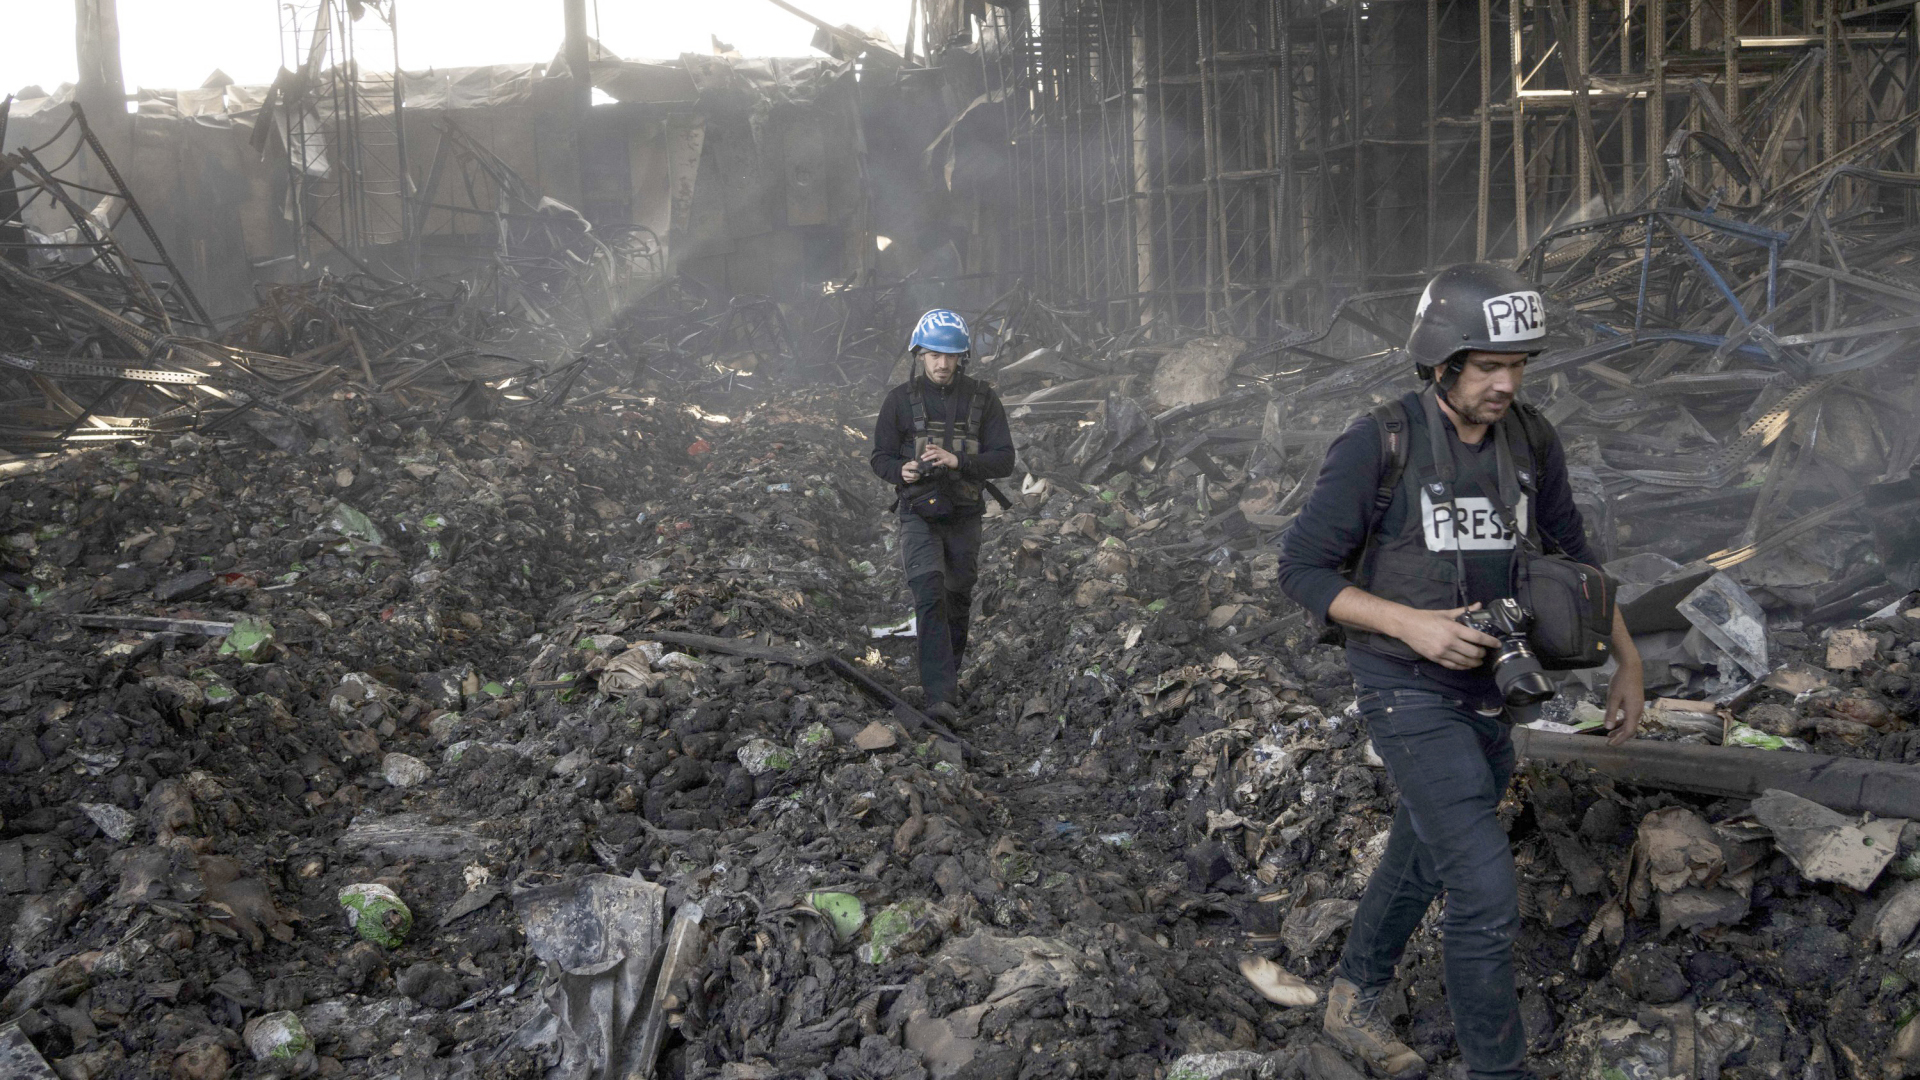 Journalisten laufen durch ein zerstörtes Einkaufszentrum in Kiew | AP